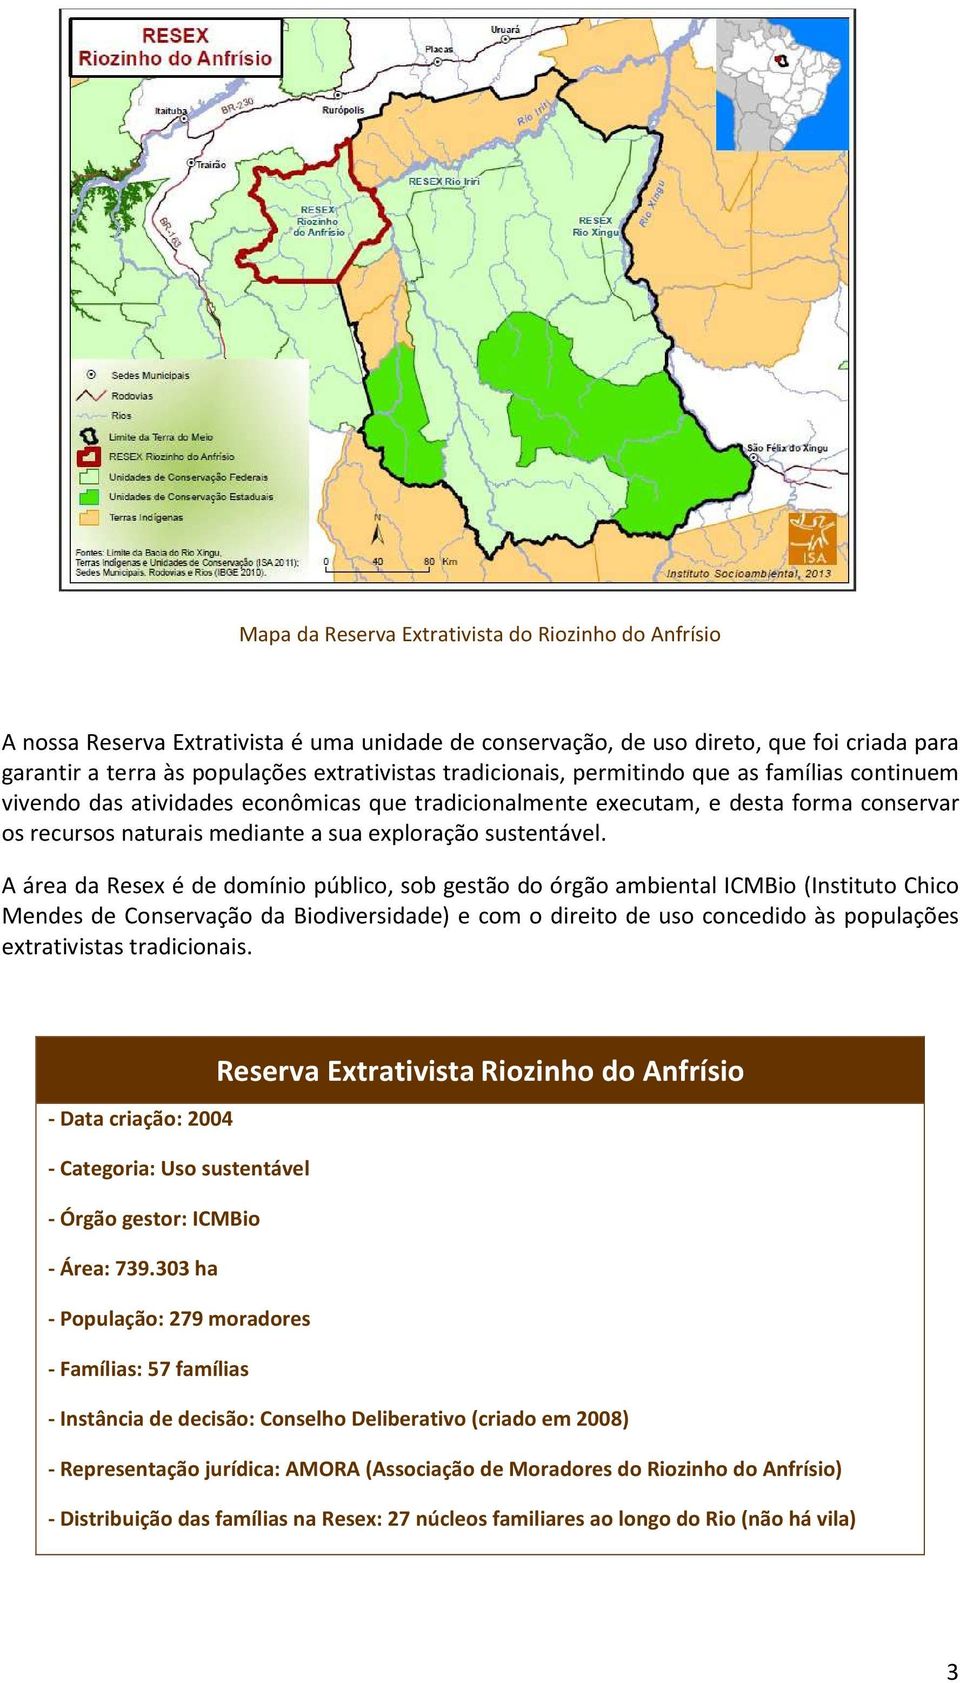 A área da Resex é de domínio público, sob gestão do órgão ambiental ICMBio (Instituto Chico Mendes de Conservação da Biodiversidade) e com o direito de uso concedido às populações extrativistas